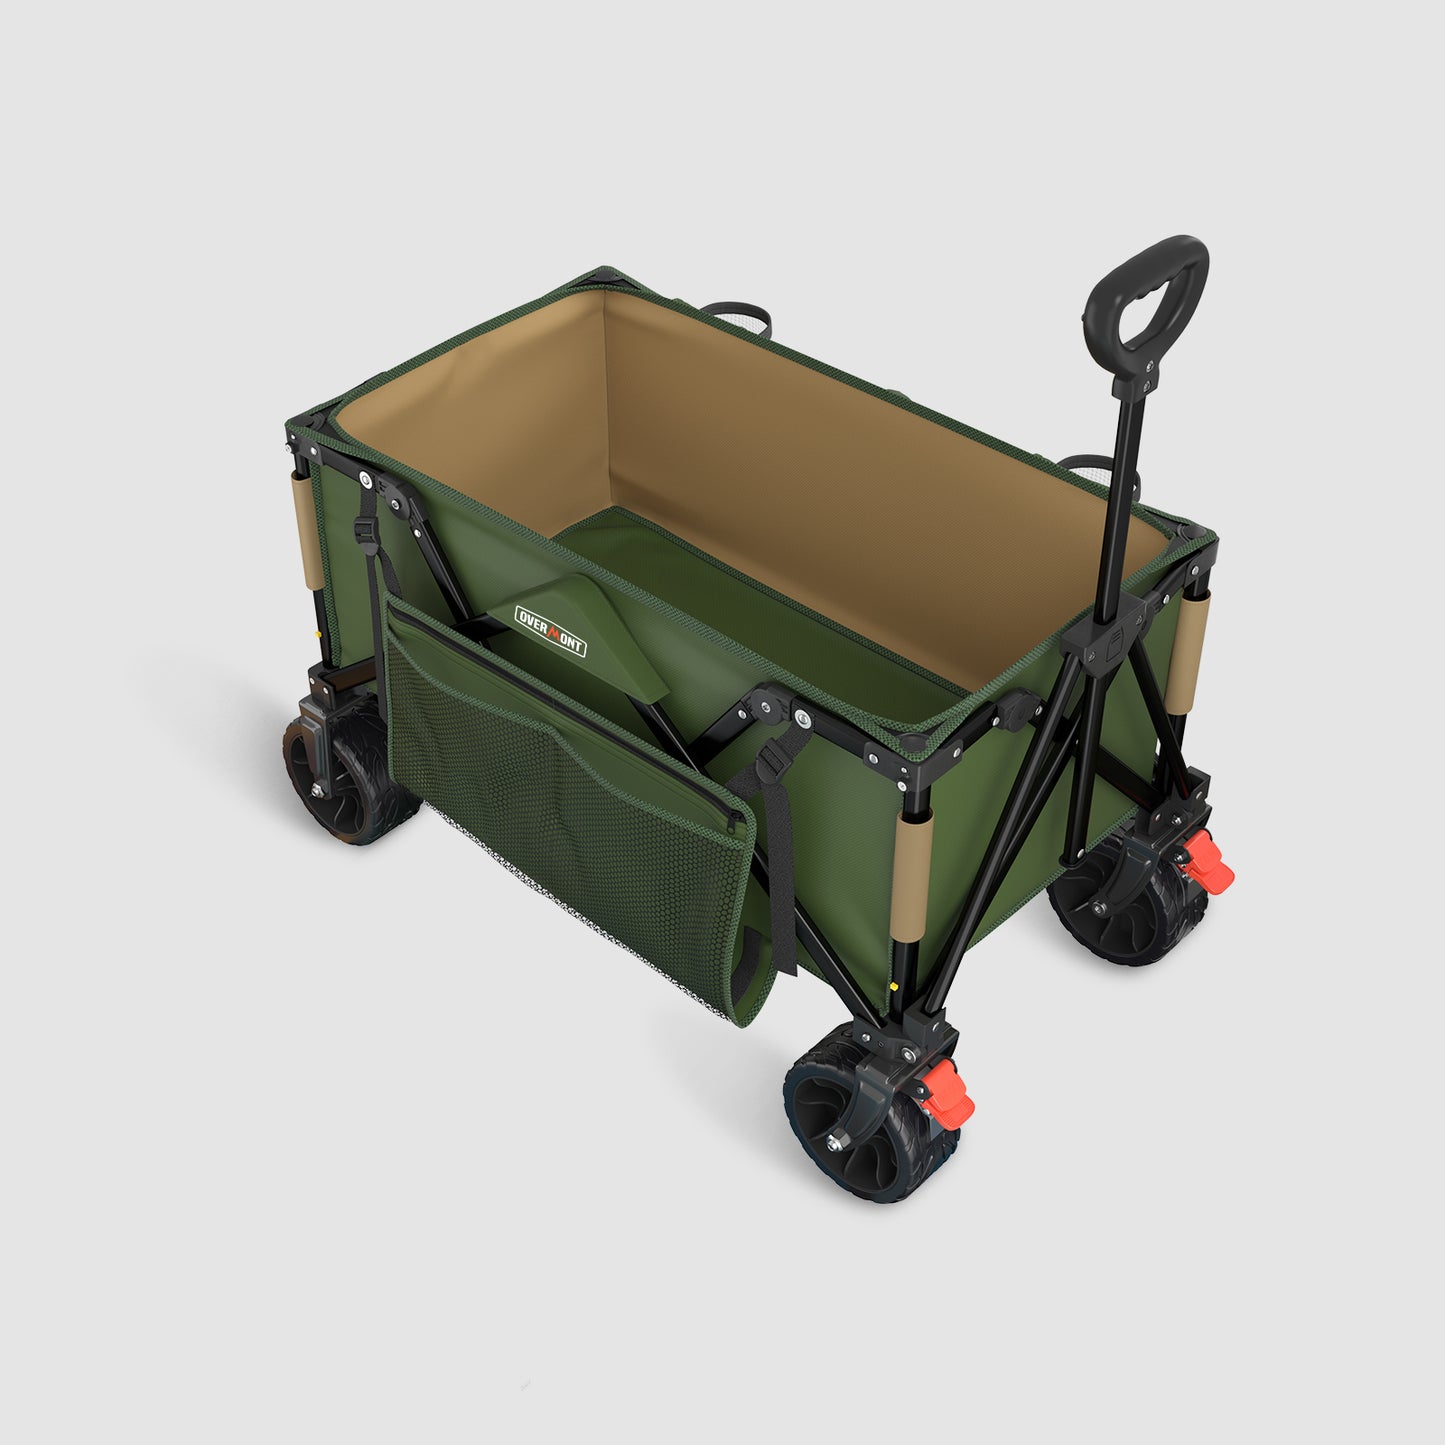 3.2 In wheel green folding wagon